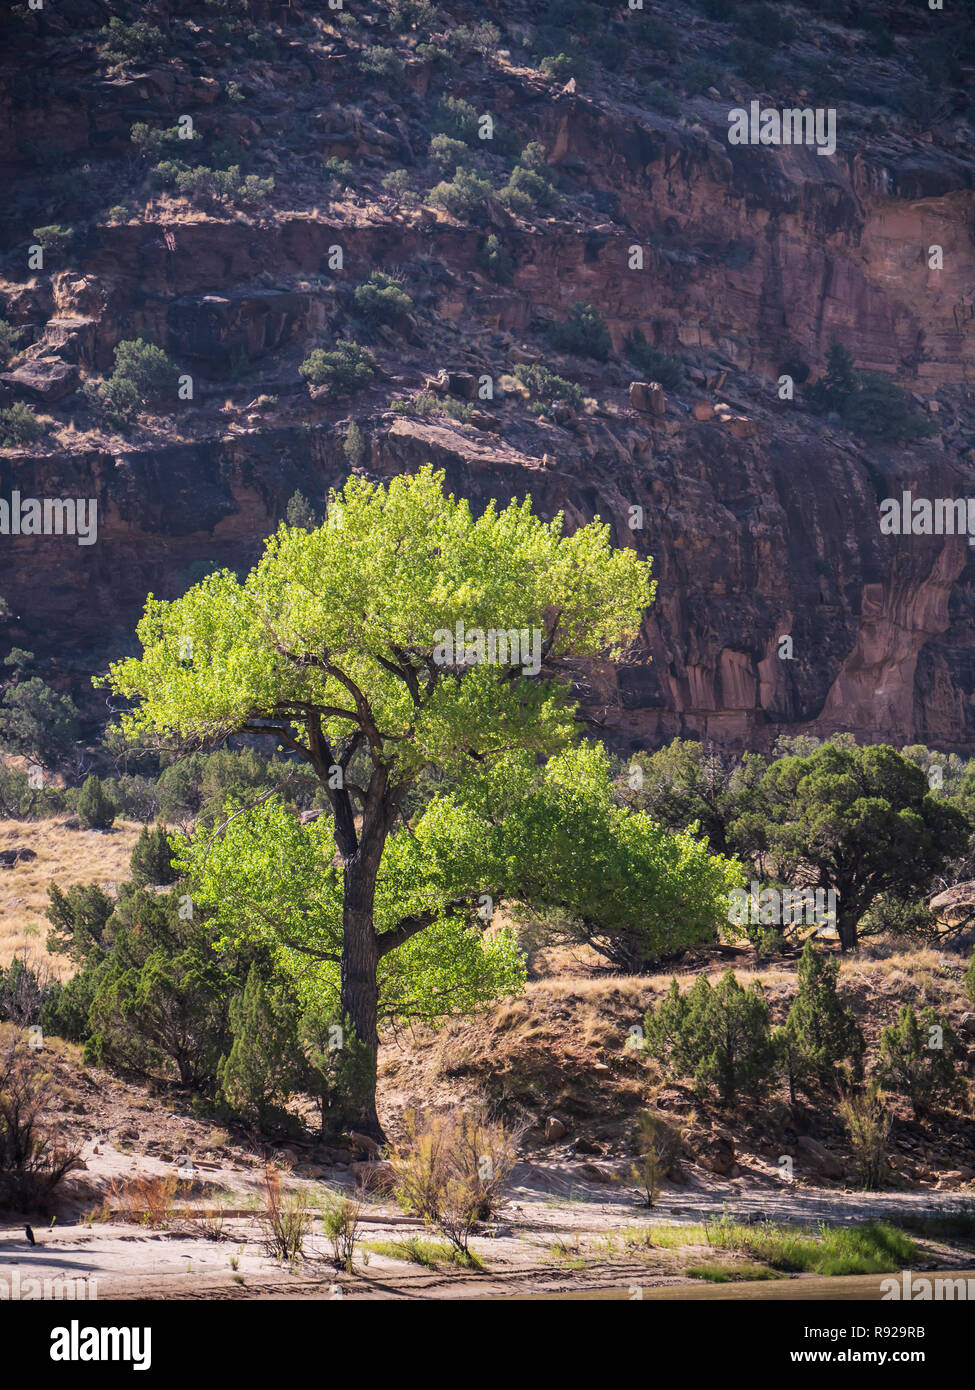 Peuplier de l'arbre à côté de la rivière, la désolation au nord du canyon de la rivière Verte, de l'Utah. Banque D'Images